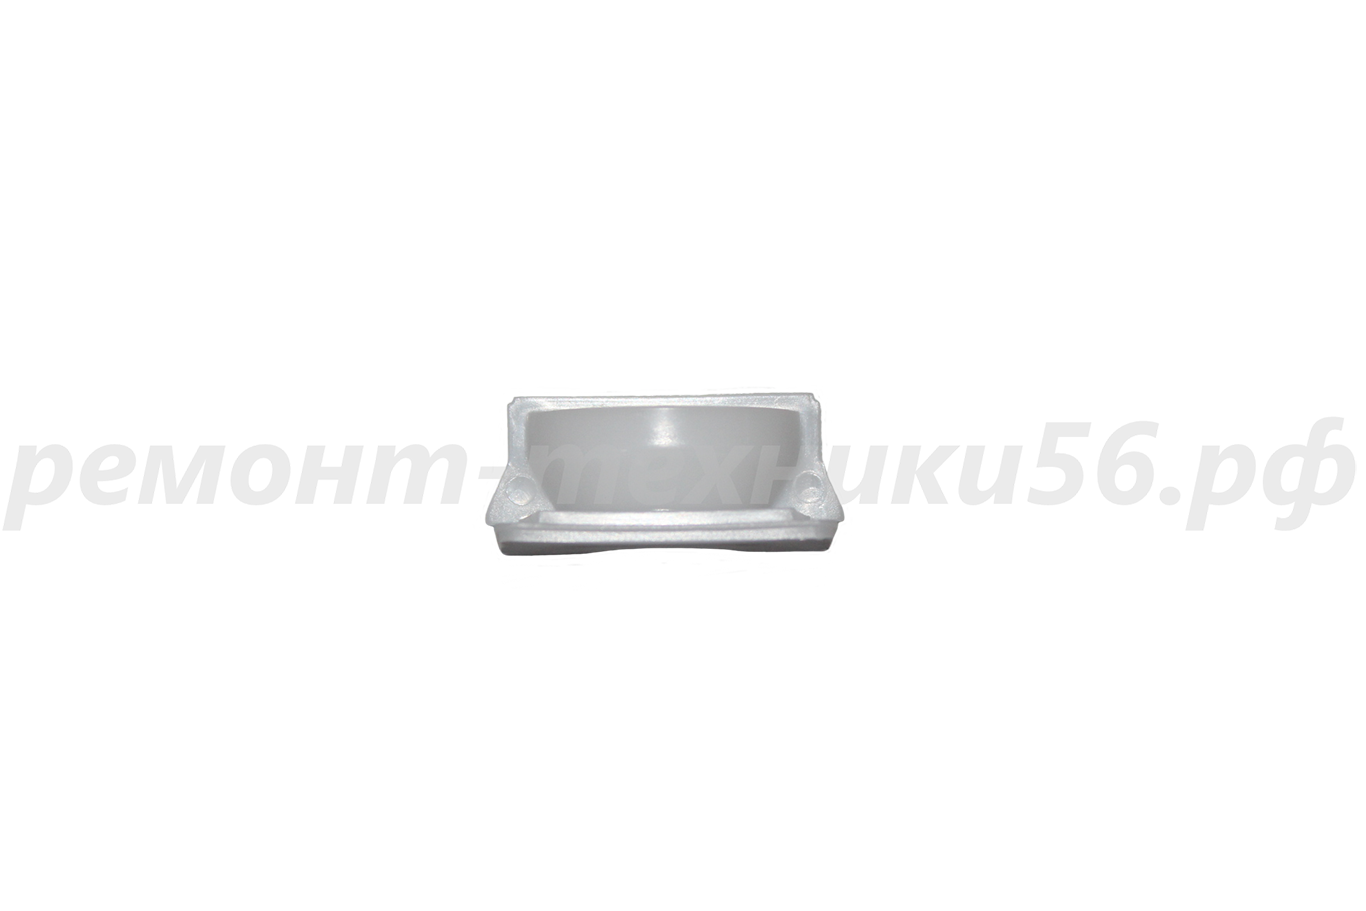 Подшипник скольжения передний Electrolux EHAW - 7510D black (сенсорное упр.) по выгодной цене фото8